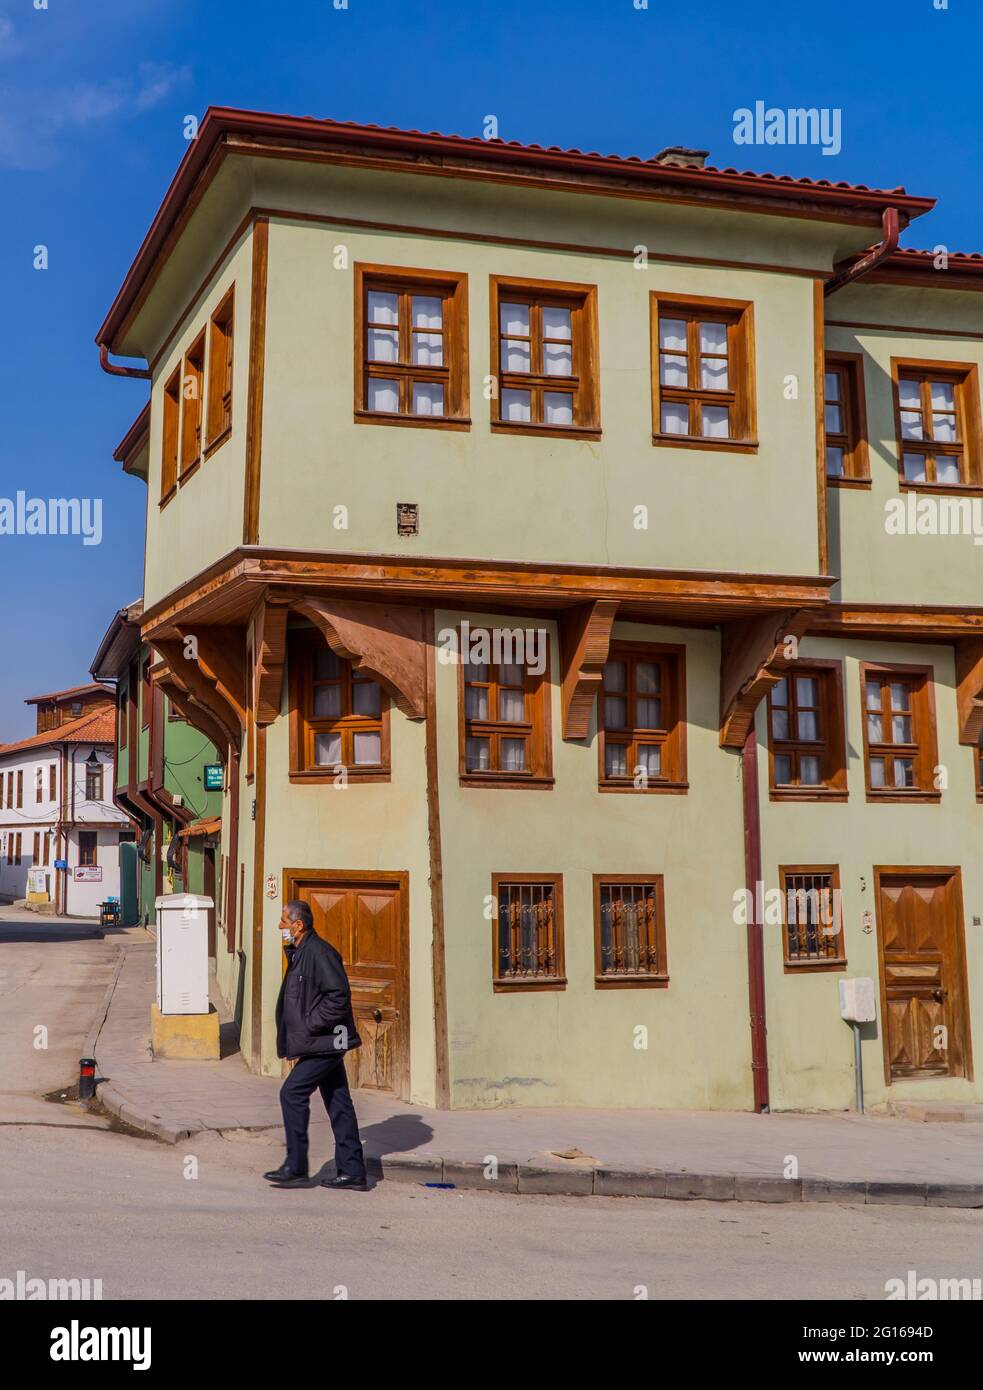 Fotografia di strada delle case ottomane a Odunpazari - Eskisehir, Turchia Foto Stock